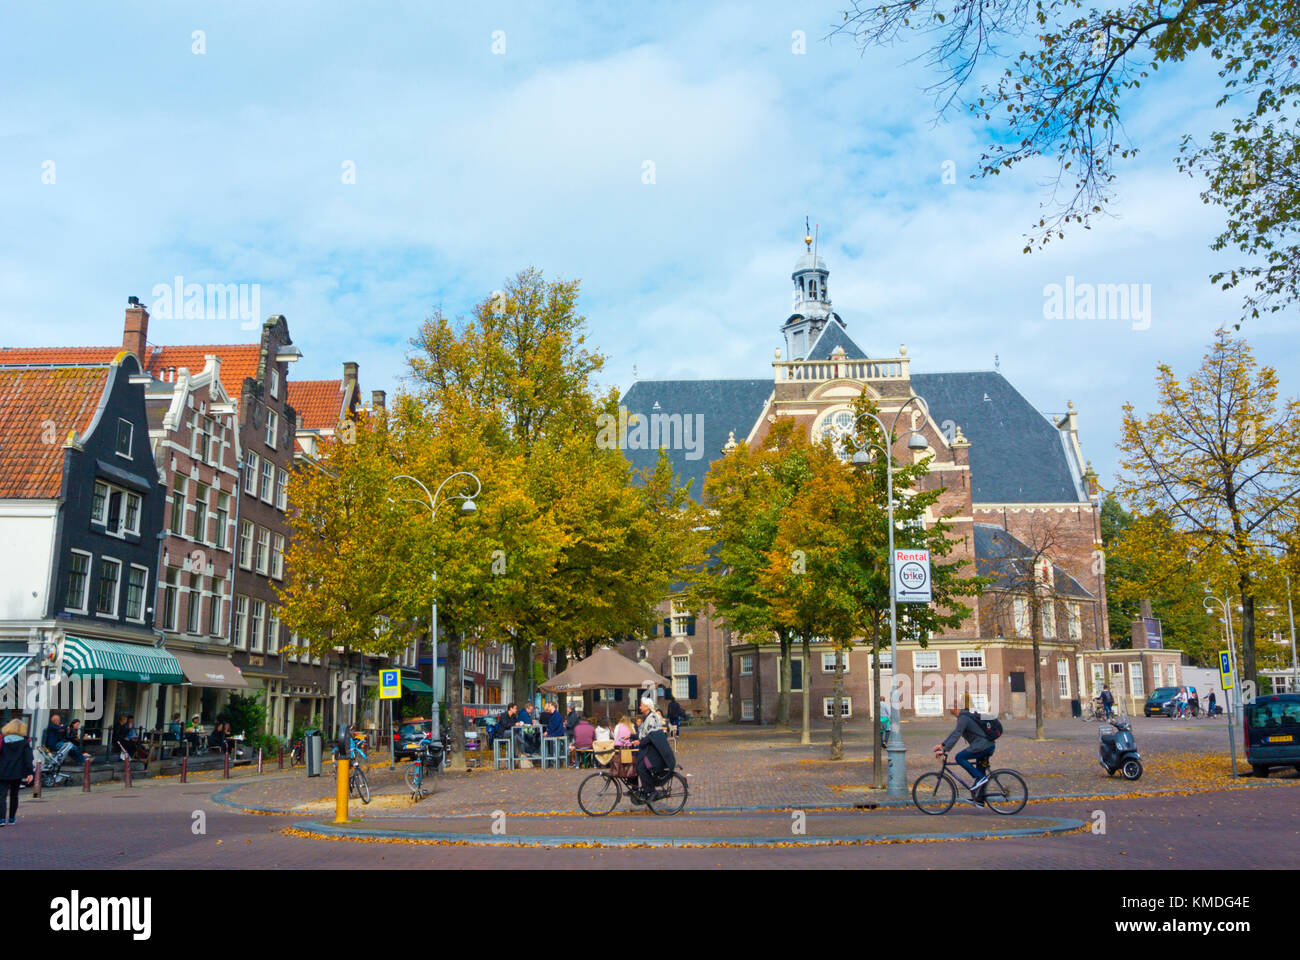 Noordermarkt, Jordaan, Amsterdam, The Netherlands Stock Photo - Alamy